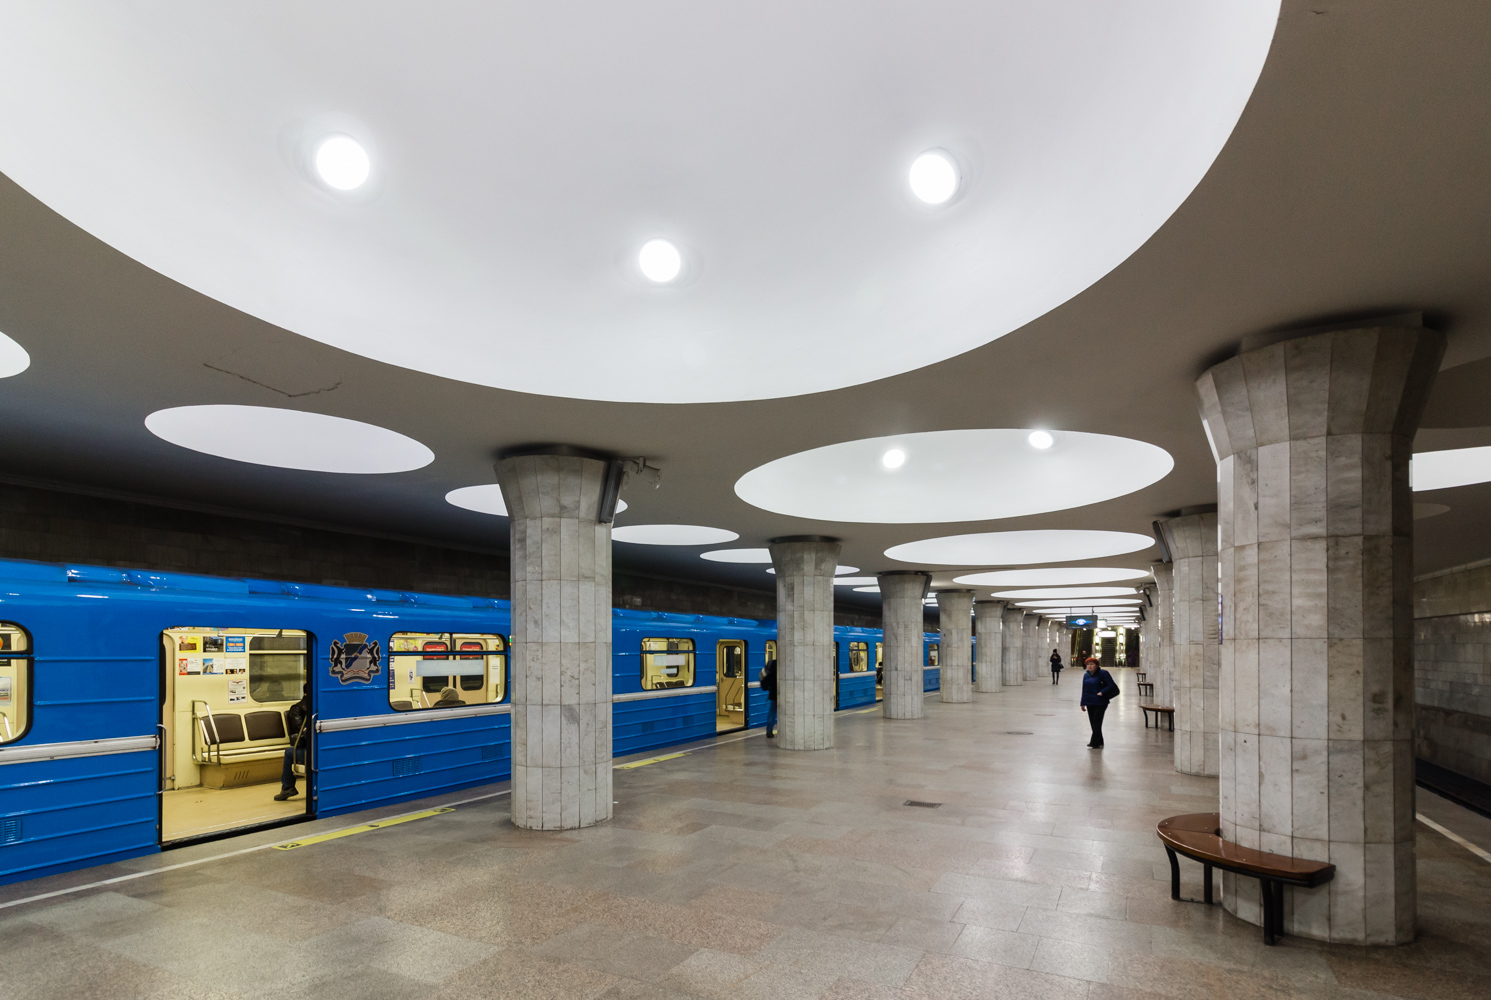 Новосибирск — Дзержинская линия — станция "Площадь Гарина-Михайловского"